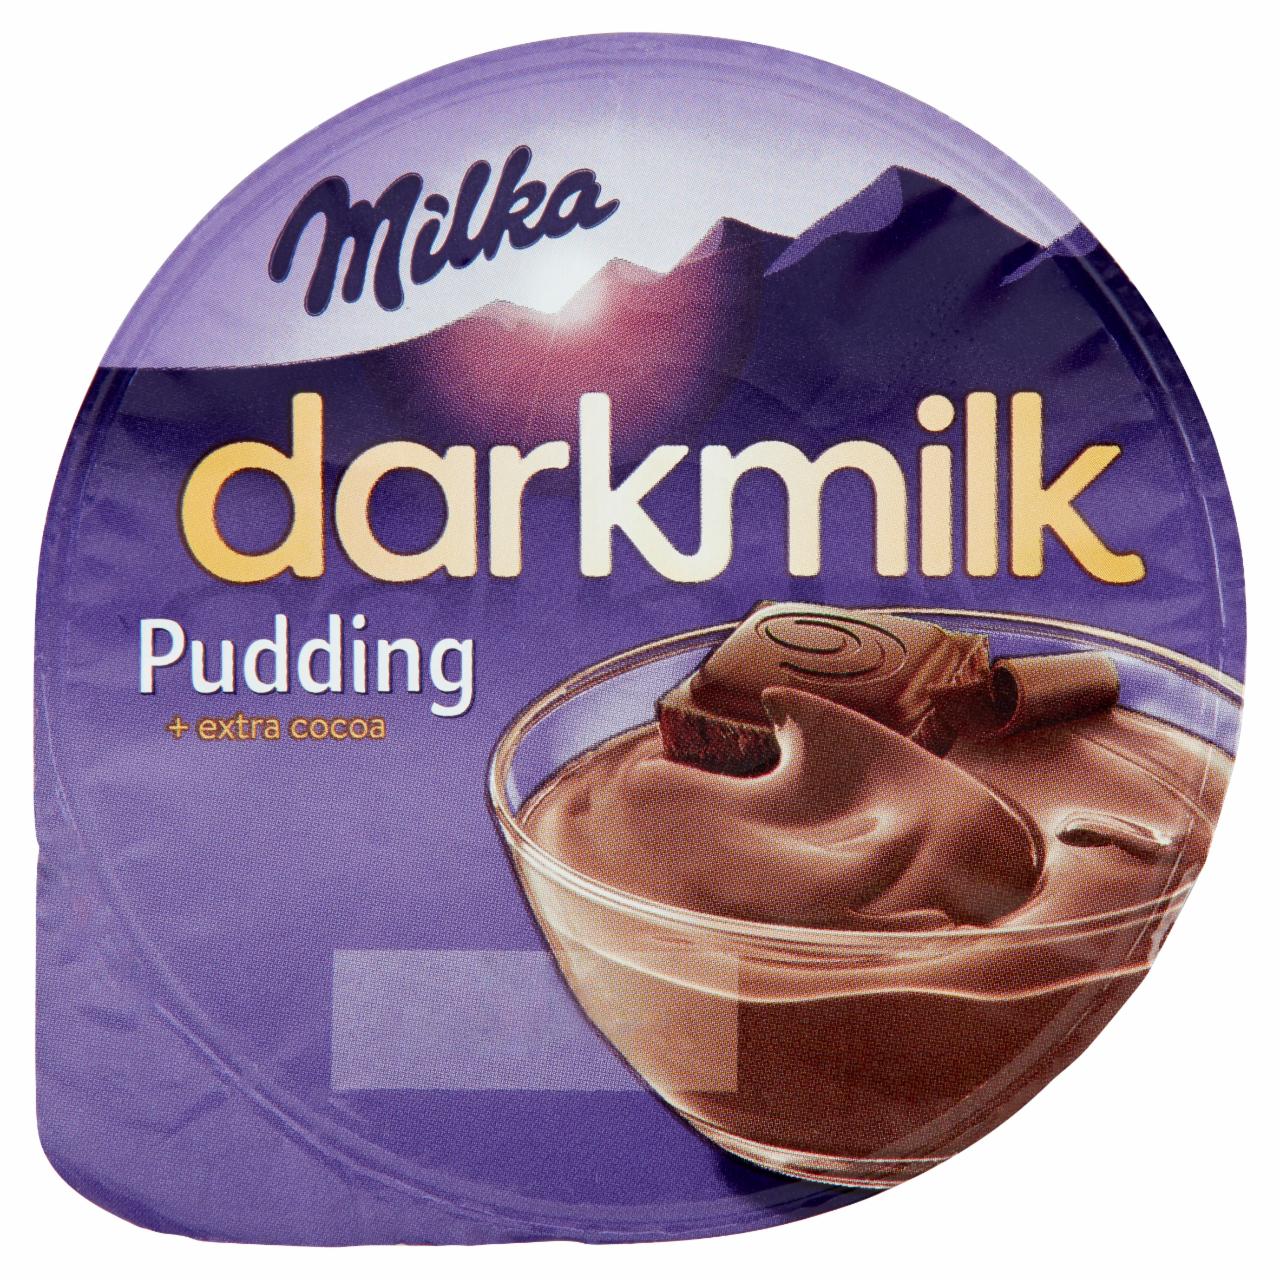 Képek - Milka Darkmilk csokoládépuding desszert 150 g